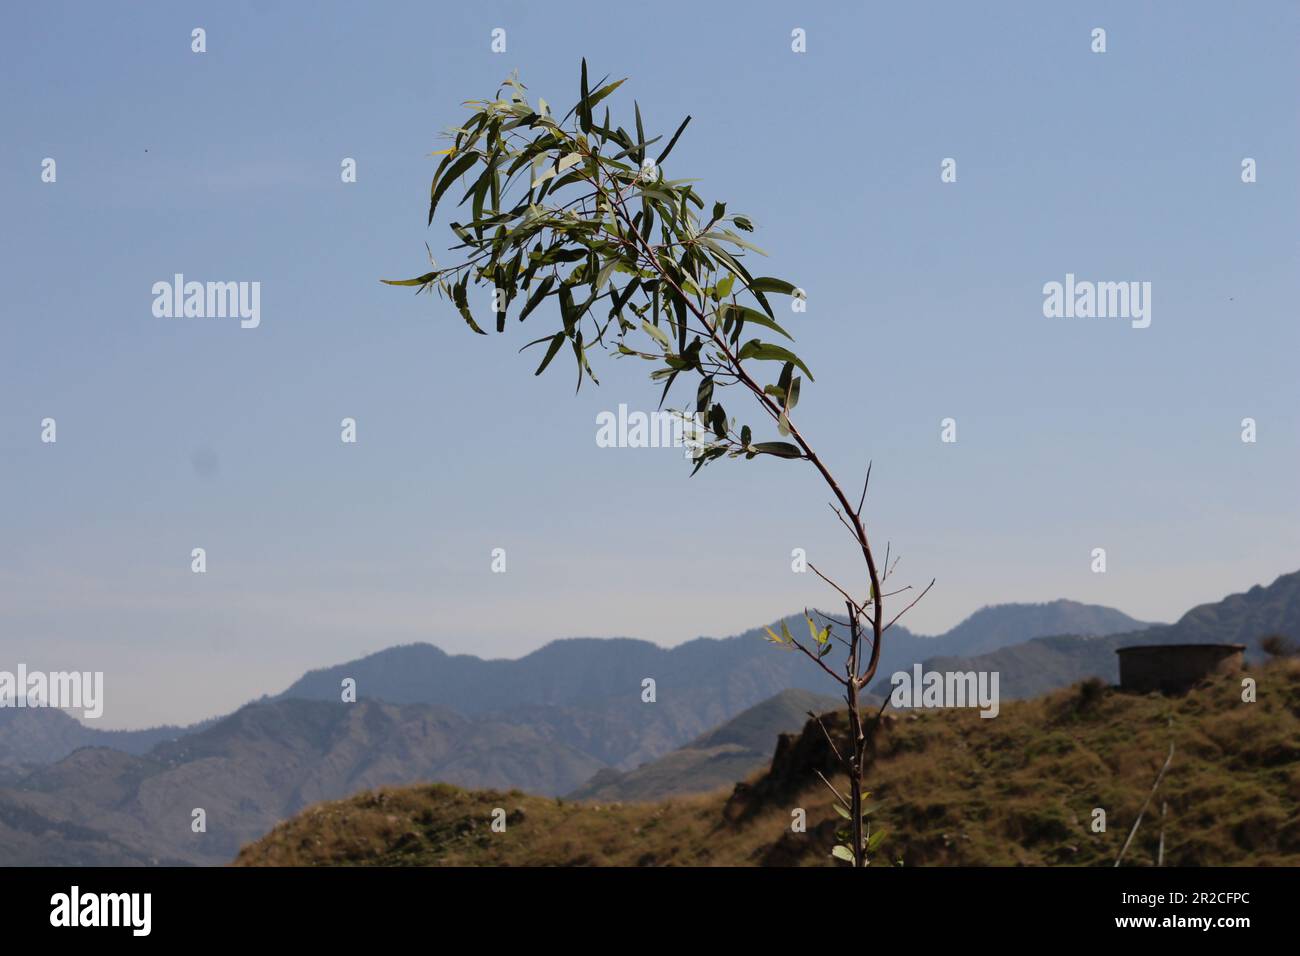 Salix alba plant on a mountain Stock Photo